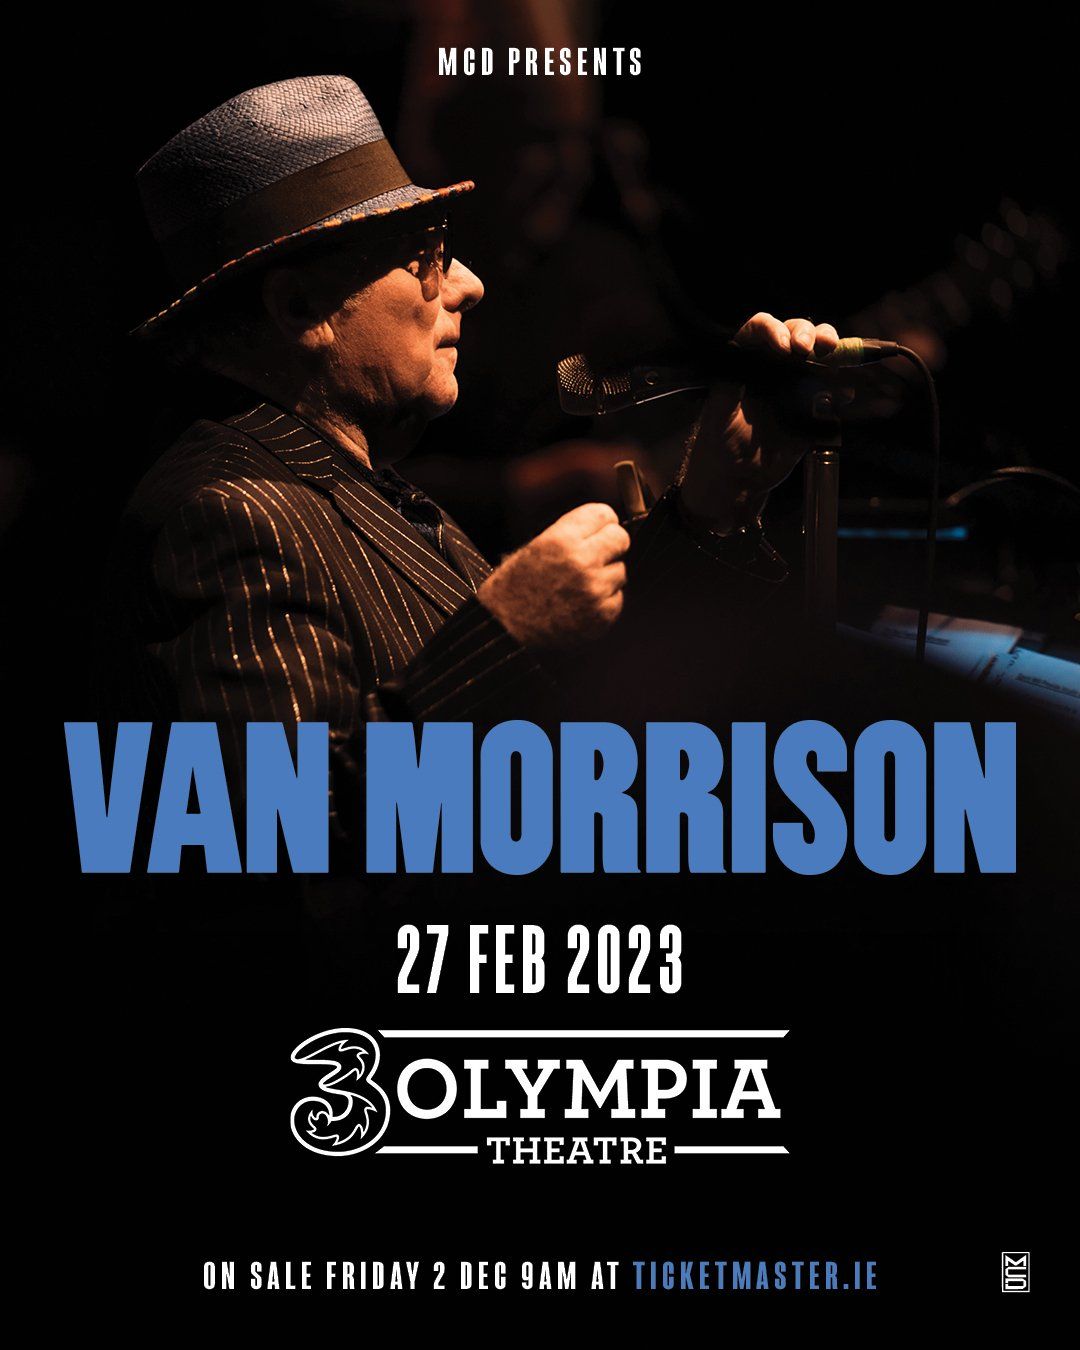 Van Morrison 3Olympia Theatre Dublin Concert Date Confirmed